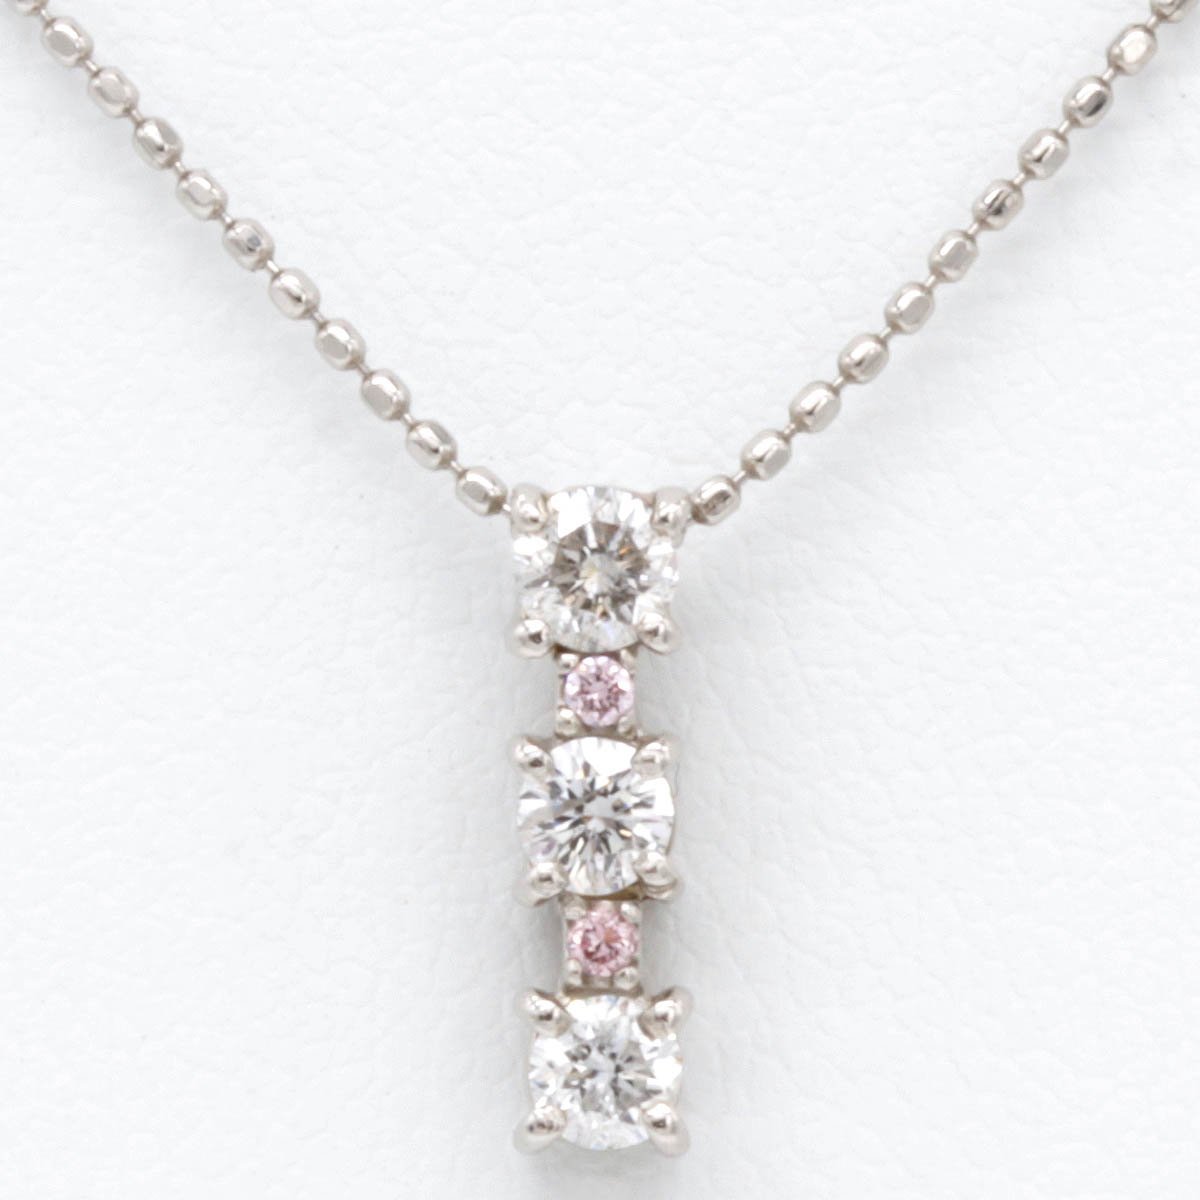 専門店では 美品『USED』 Pt850/Pt900 ネックレス ダイヤモンド 0.30ct 2.3g プラチナチェーン